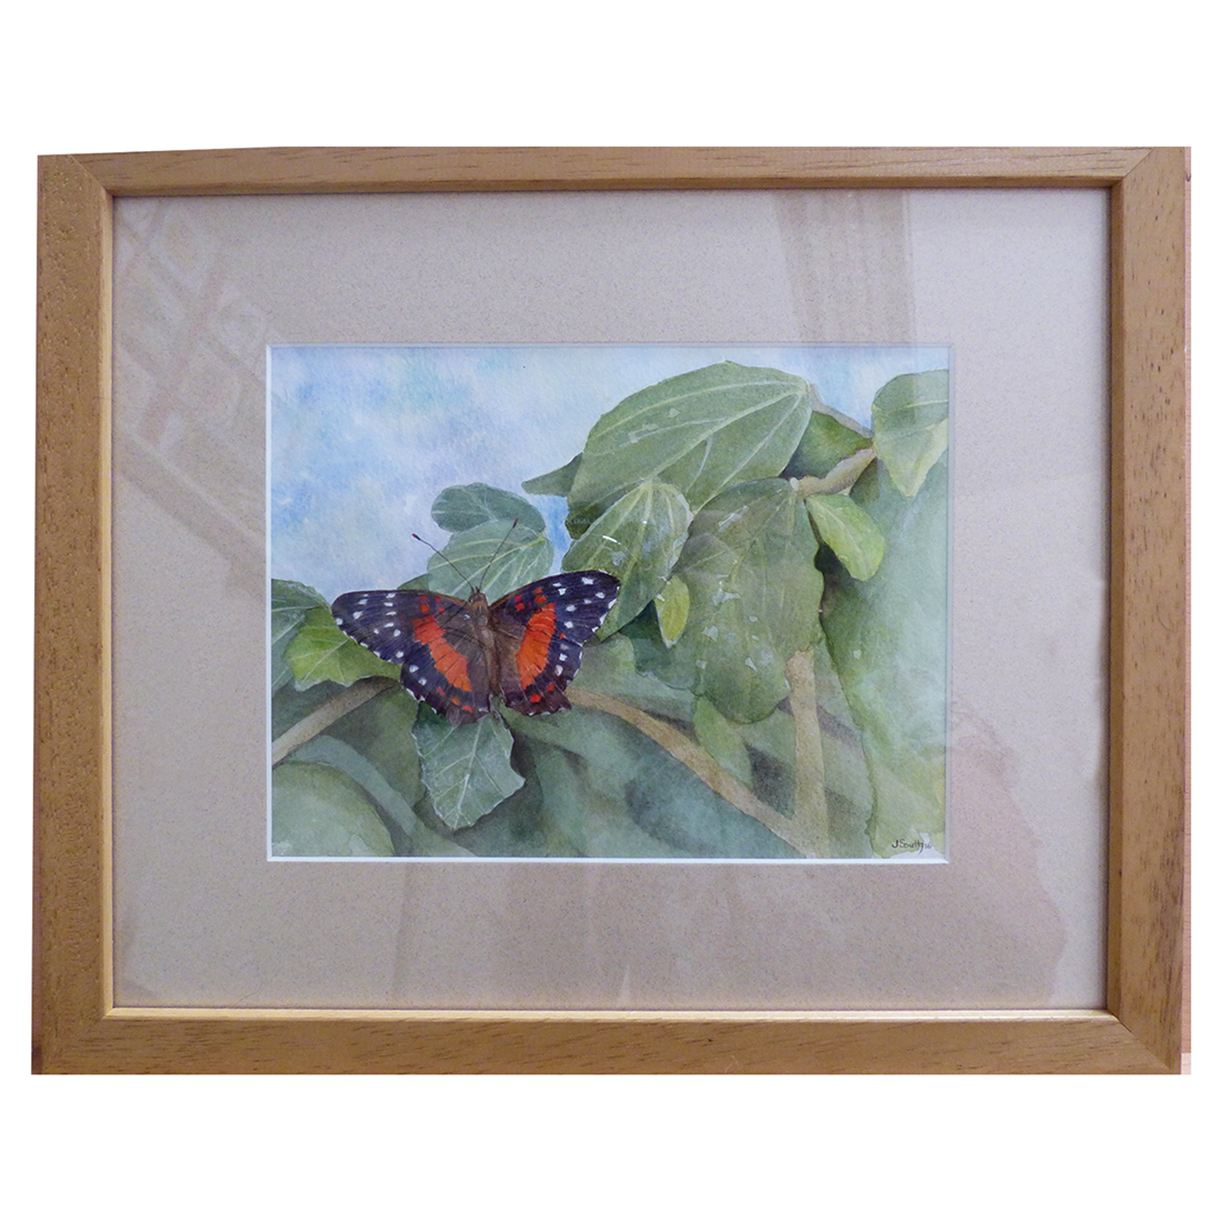 Butterfly in watercolour